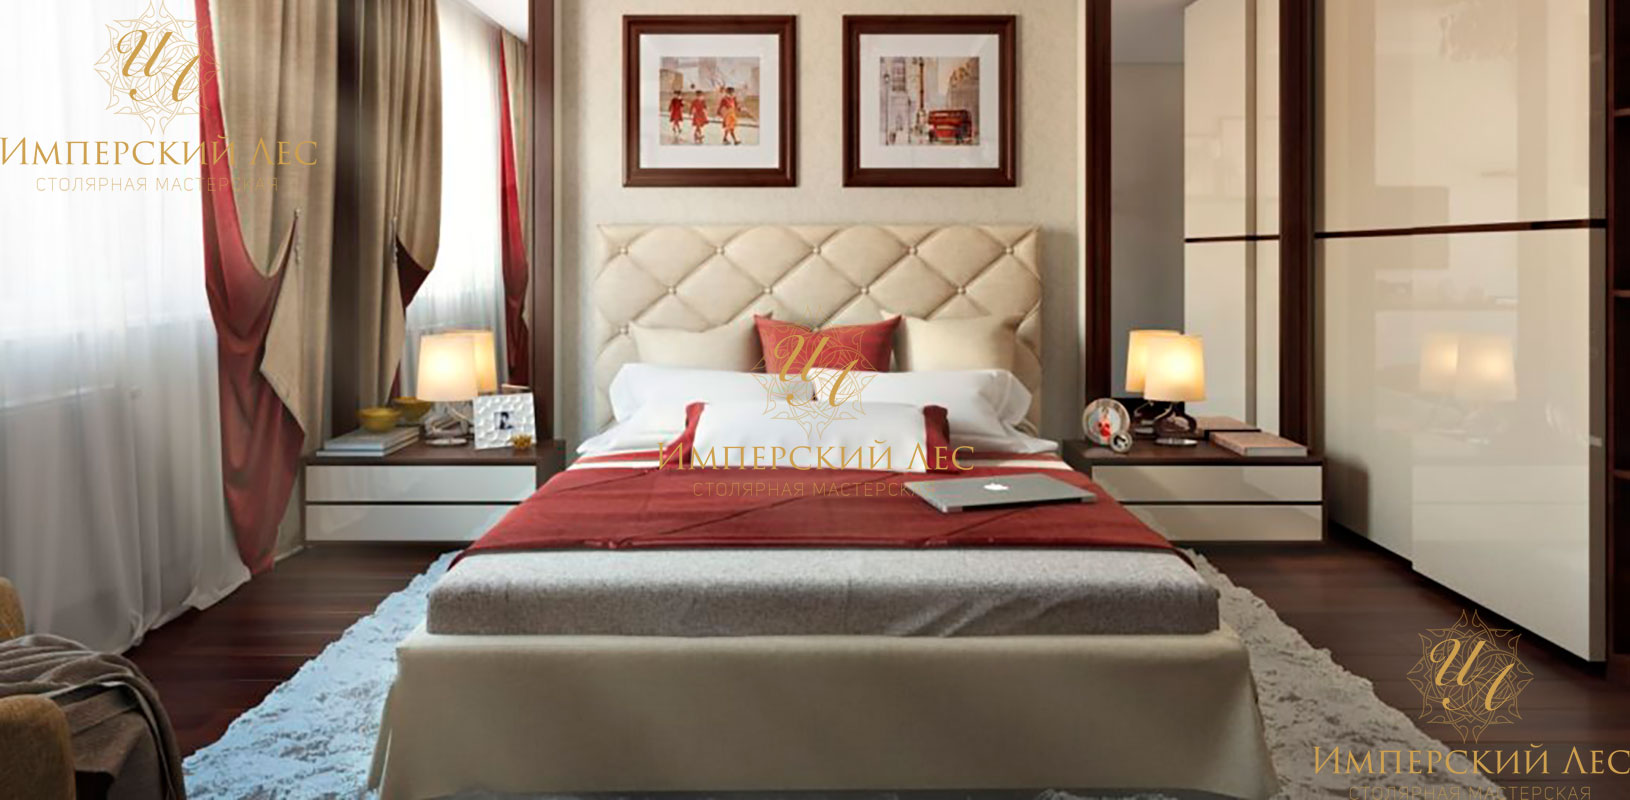 Кровать IW Odri двуспальная с каретной стяжкой